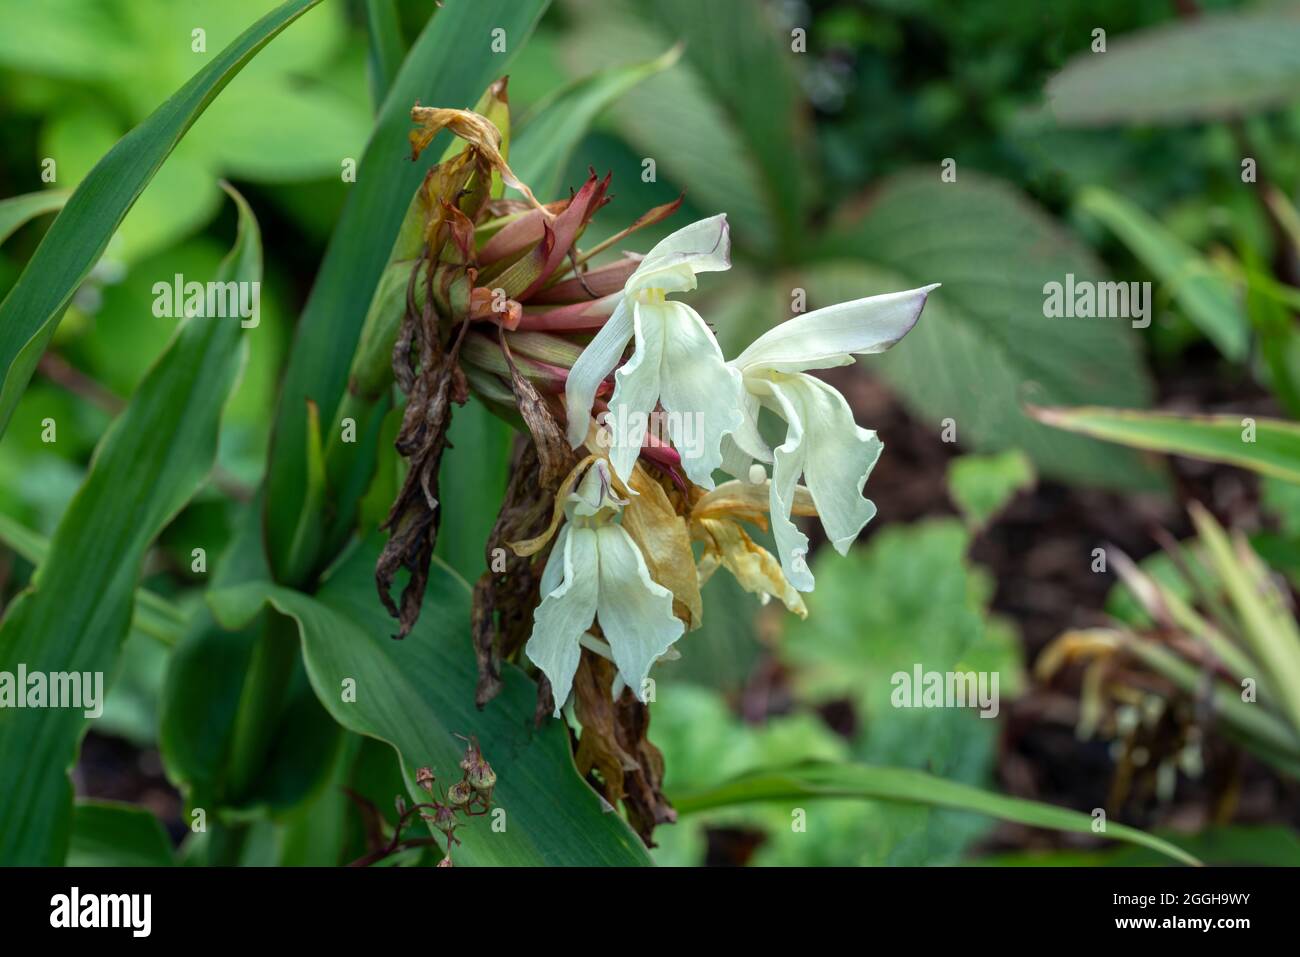 Roscoea x beesiana Una planta florida de verano con una flor de verano blanca y crema, foto imagen de stock Foto de stock